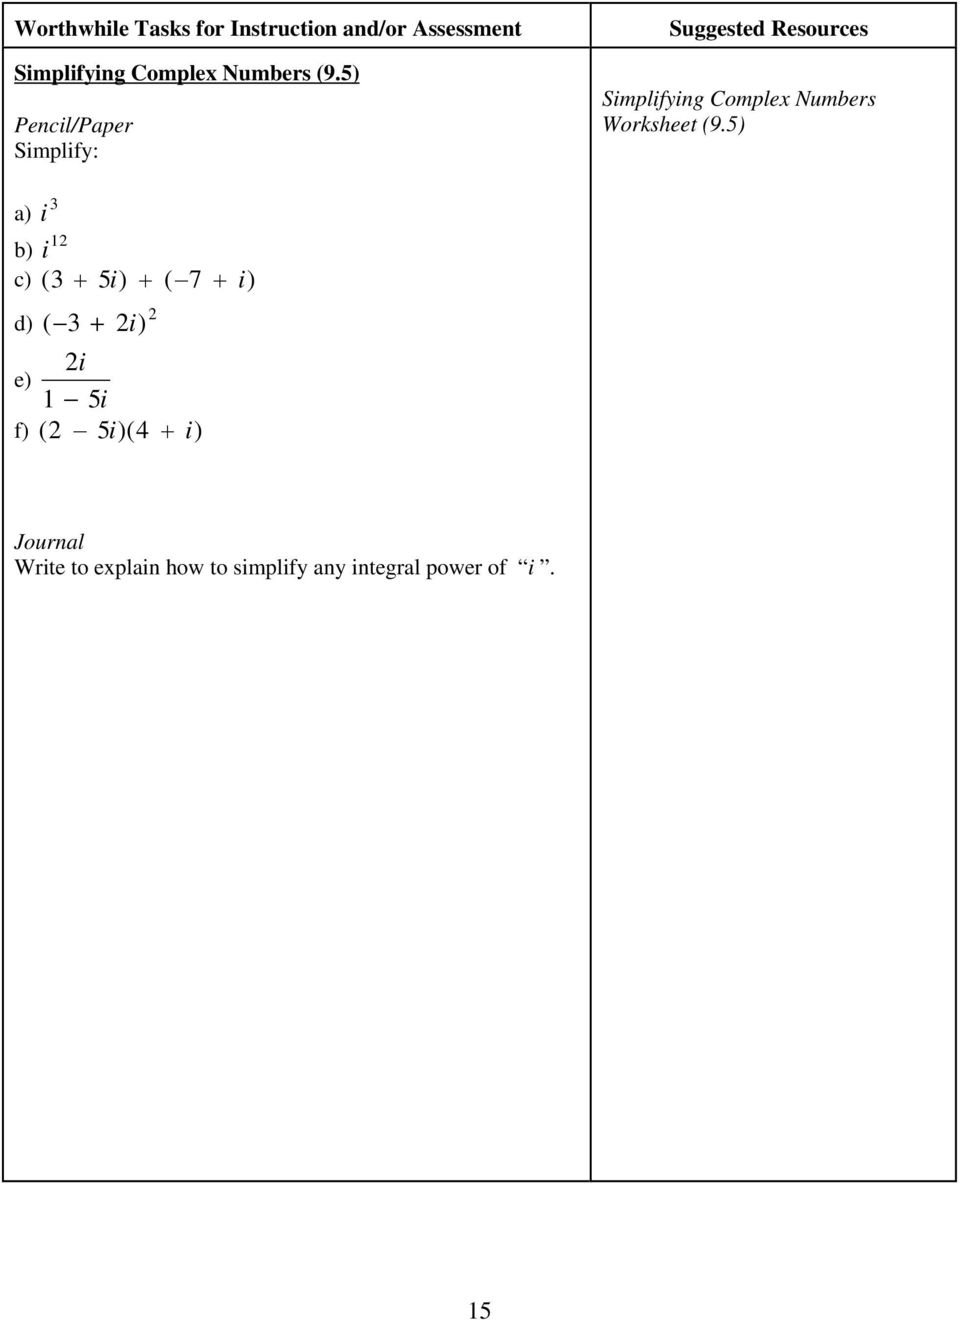 Simplifying Complex Numbers Worksheet  Yooob Also Simplifying Complex Numbers Worksheet